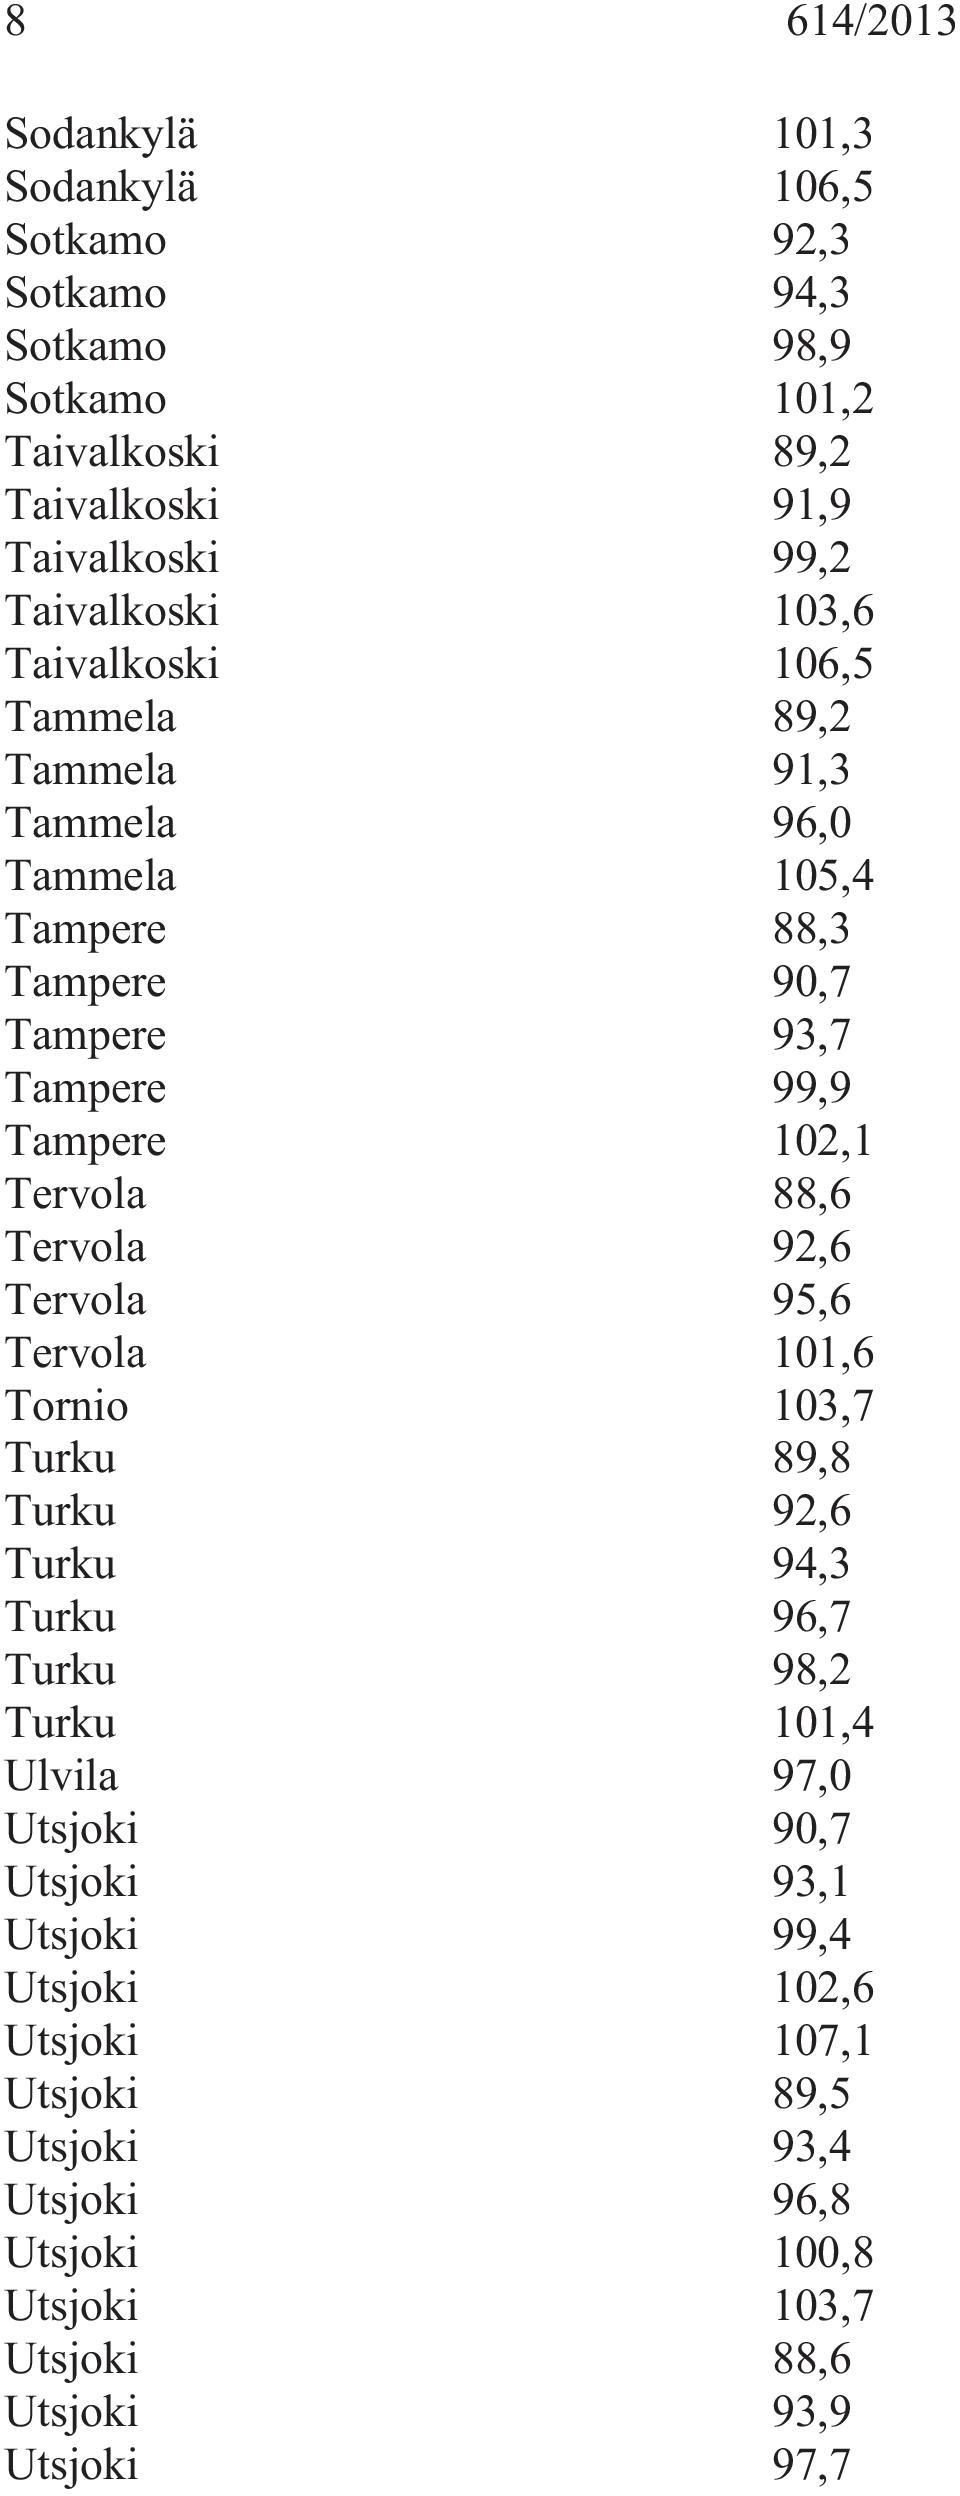 Tervola 88,6 Tervola 92,6 Tervola 95,6 Tervola 101,6 Tornio 103,7 Turku 89,8 Turku 92,6 Turku 94,3 Turku 96,7 Turku 98,2 Turku 101,4 Ulvila 97,0 Utsjoki